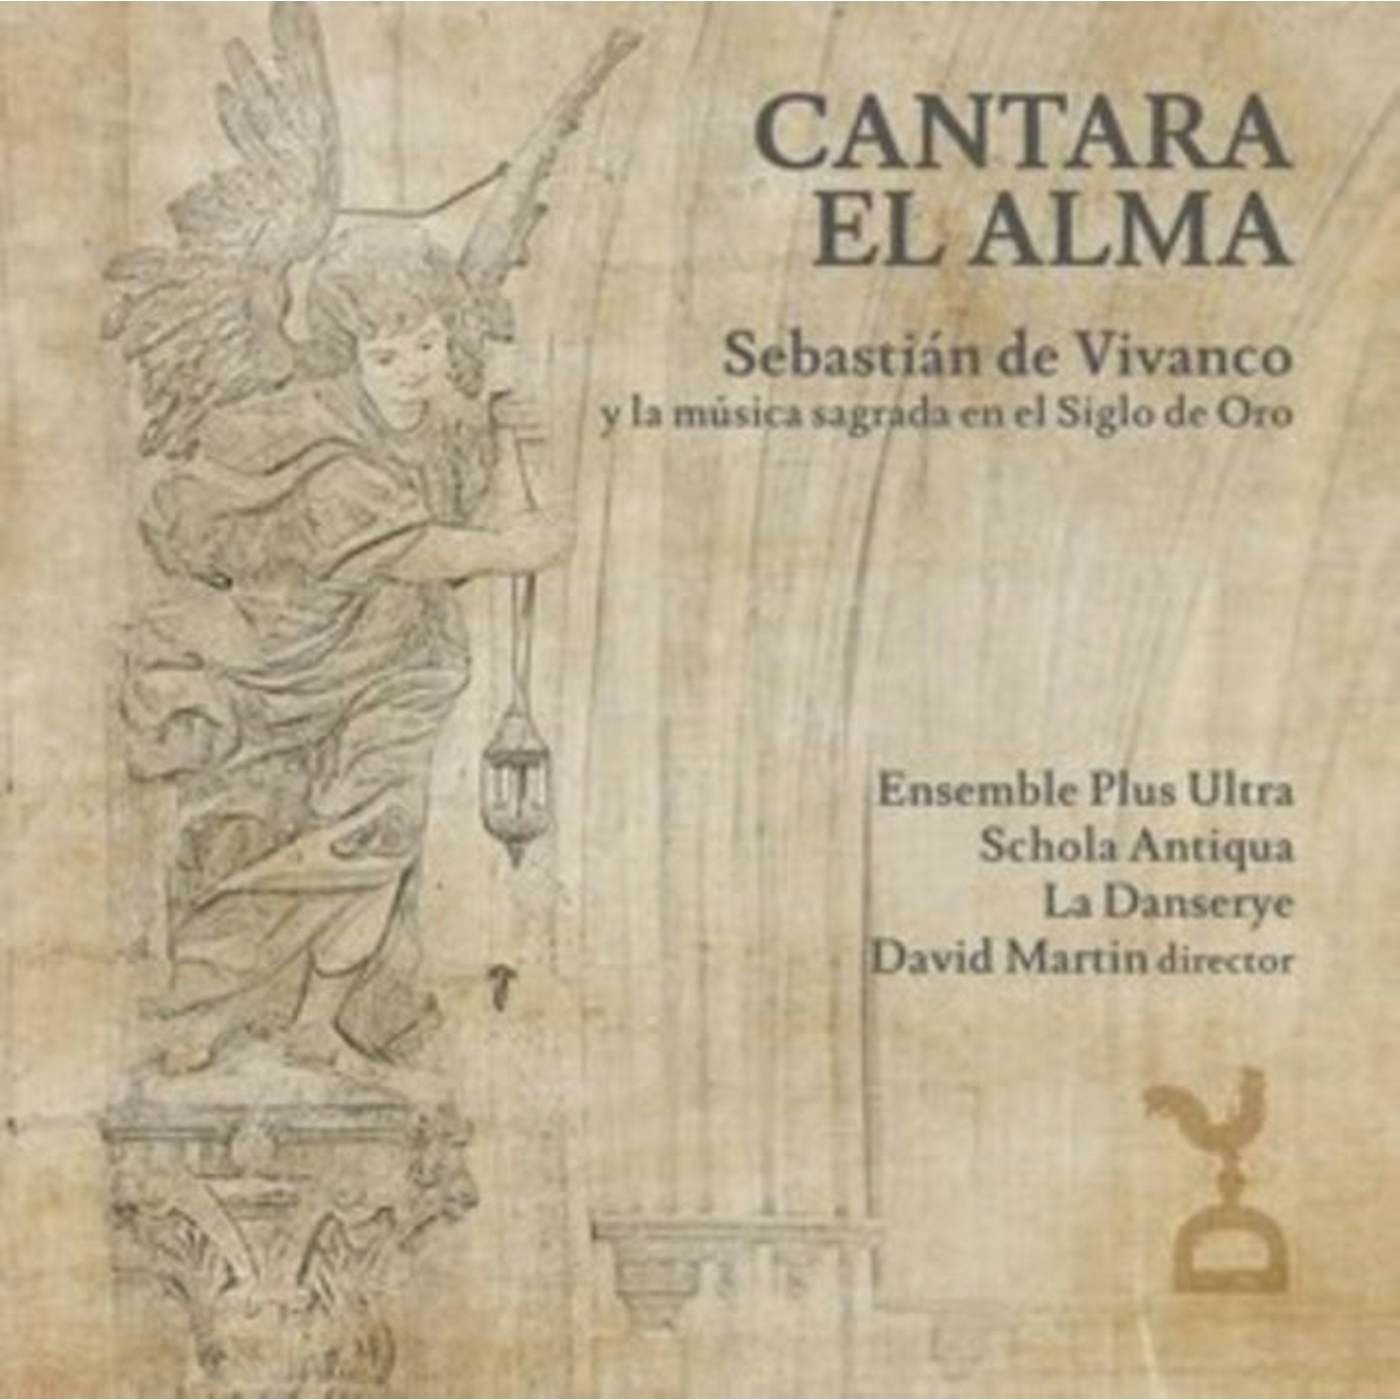 English Dogs CD - Cantara El Alma: Sebastian De Vivanco And The Sacred Music Of The Golden Age